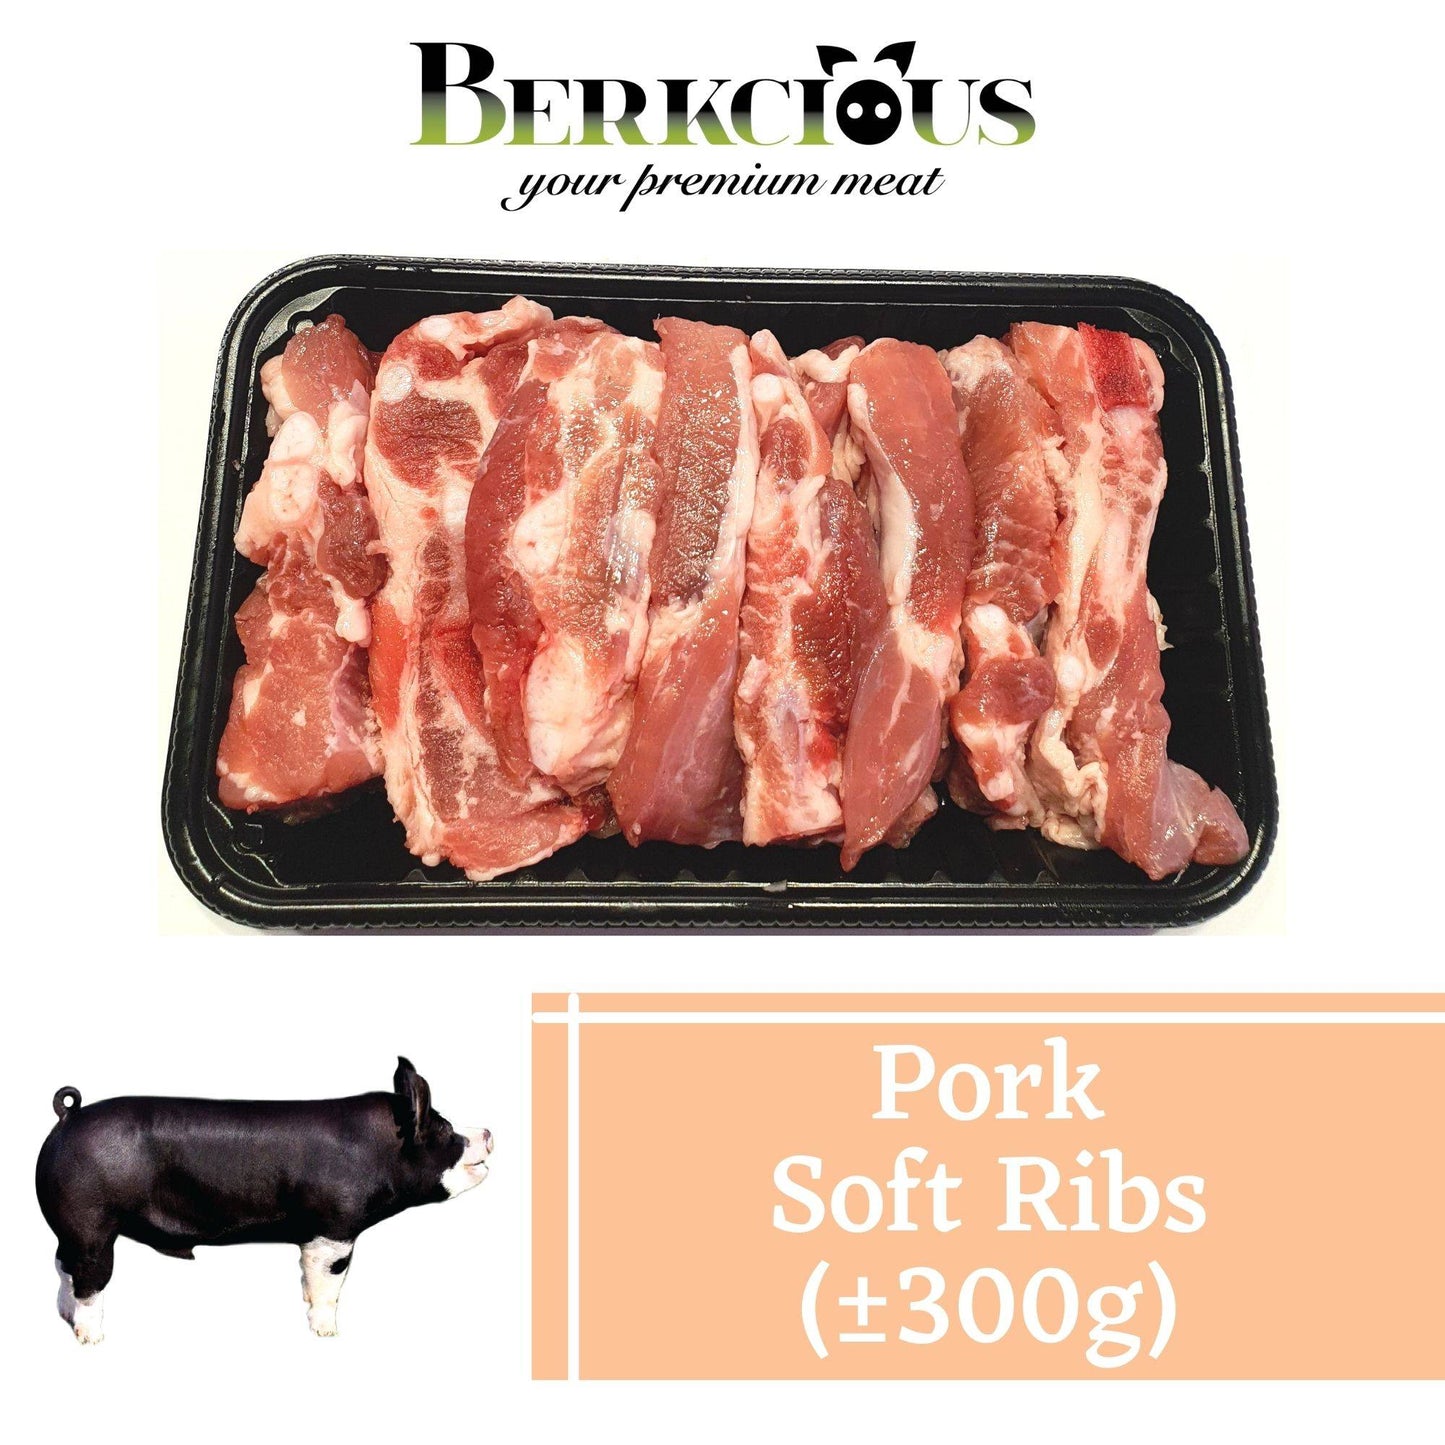 Berkcious Free Range Black Pork - Soft Ribs / 放养黑猪-软骨 (300g) - Fish Club